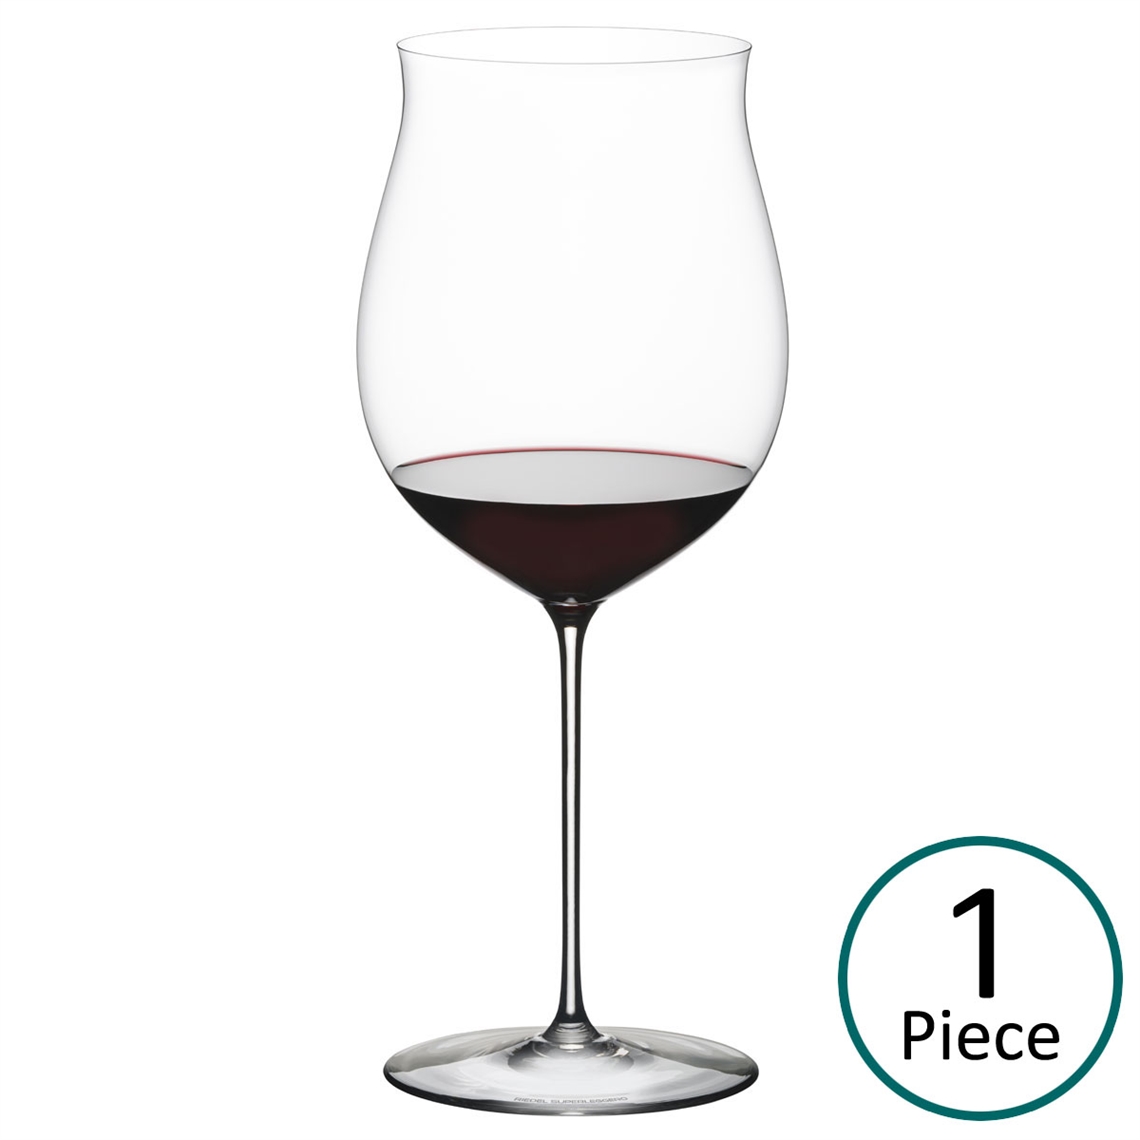 Riedel Superleggero Burgundy Grand Cru Glass - 6425/16